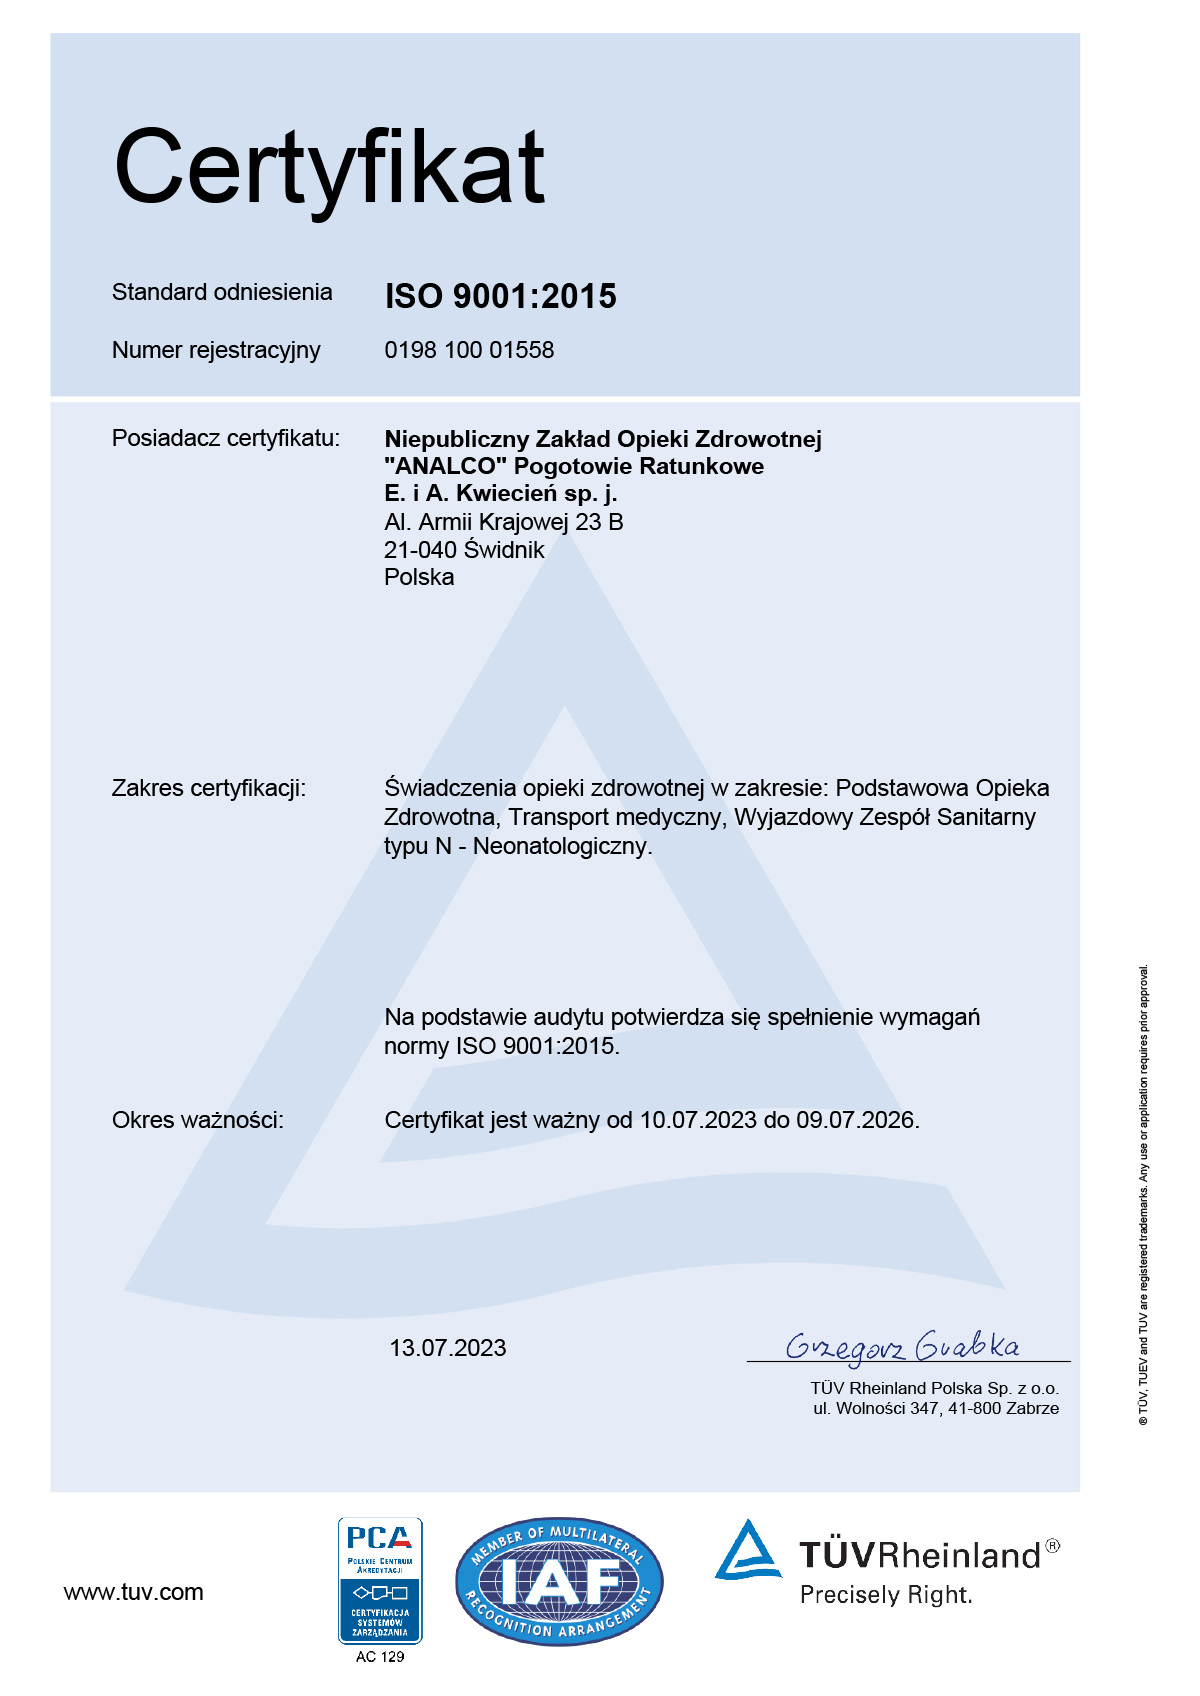 NZOZ Analco uzyskało certyfikaty TUV Rheinland